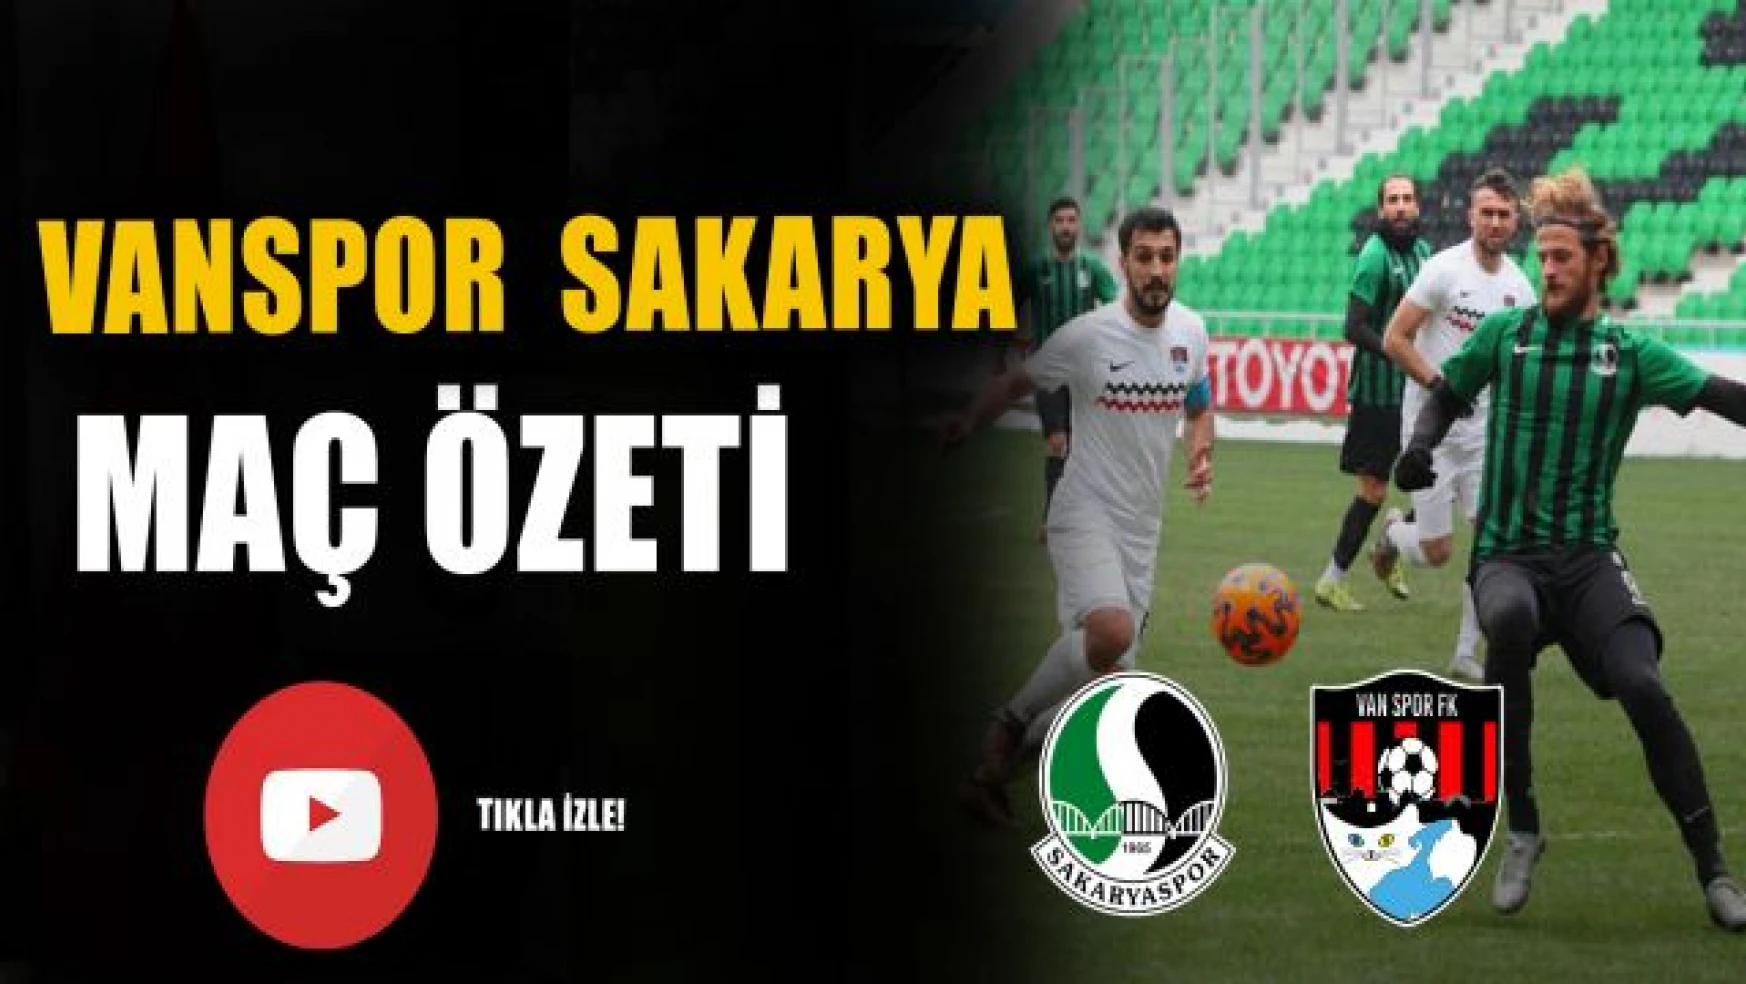 Sakaryaspor 1-1 Vanspor maç özeti